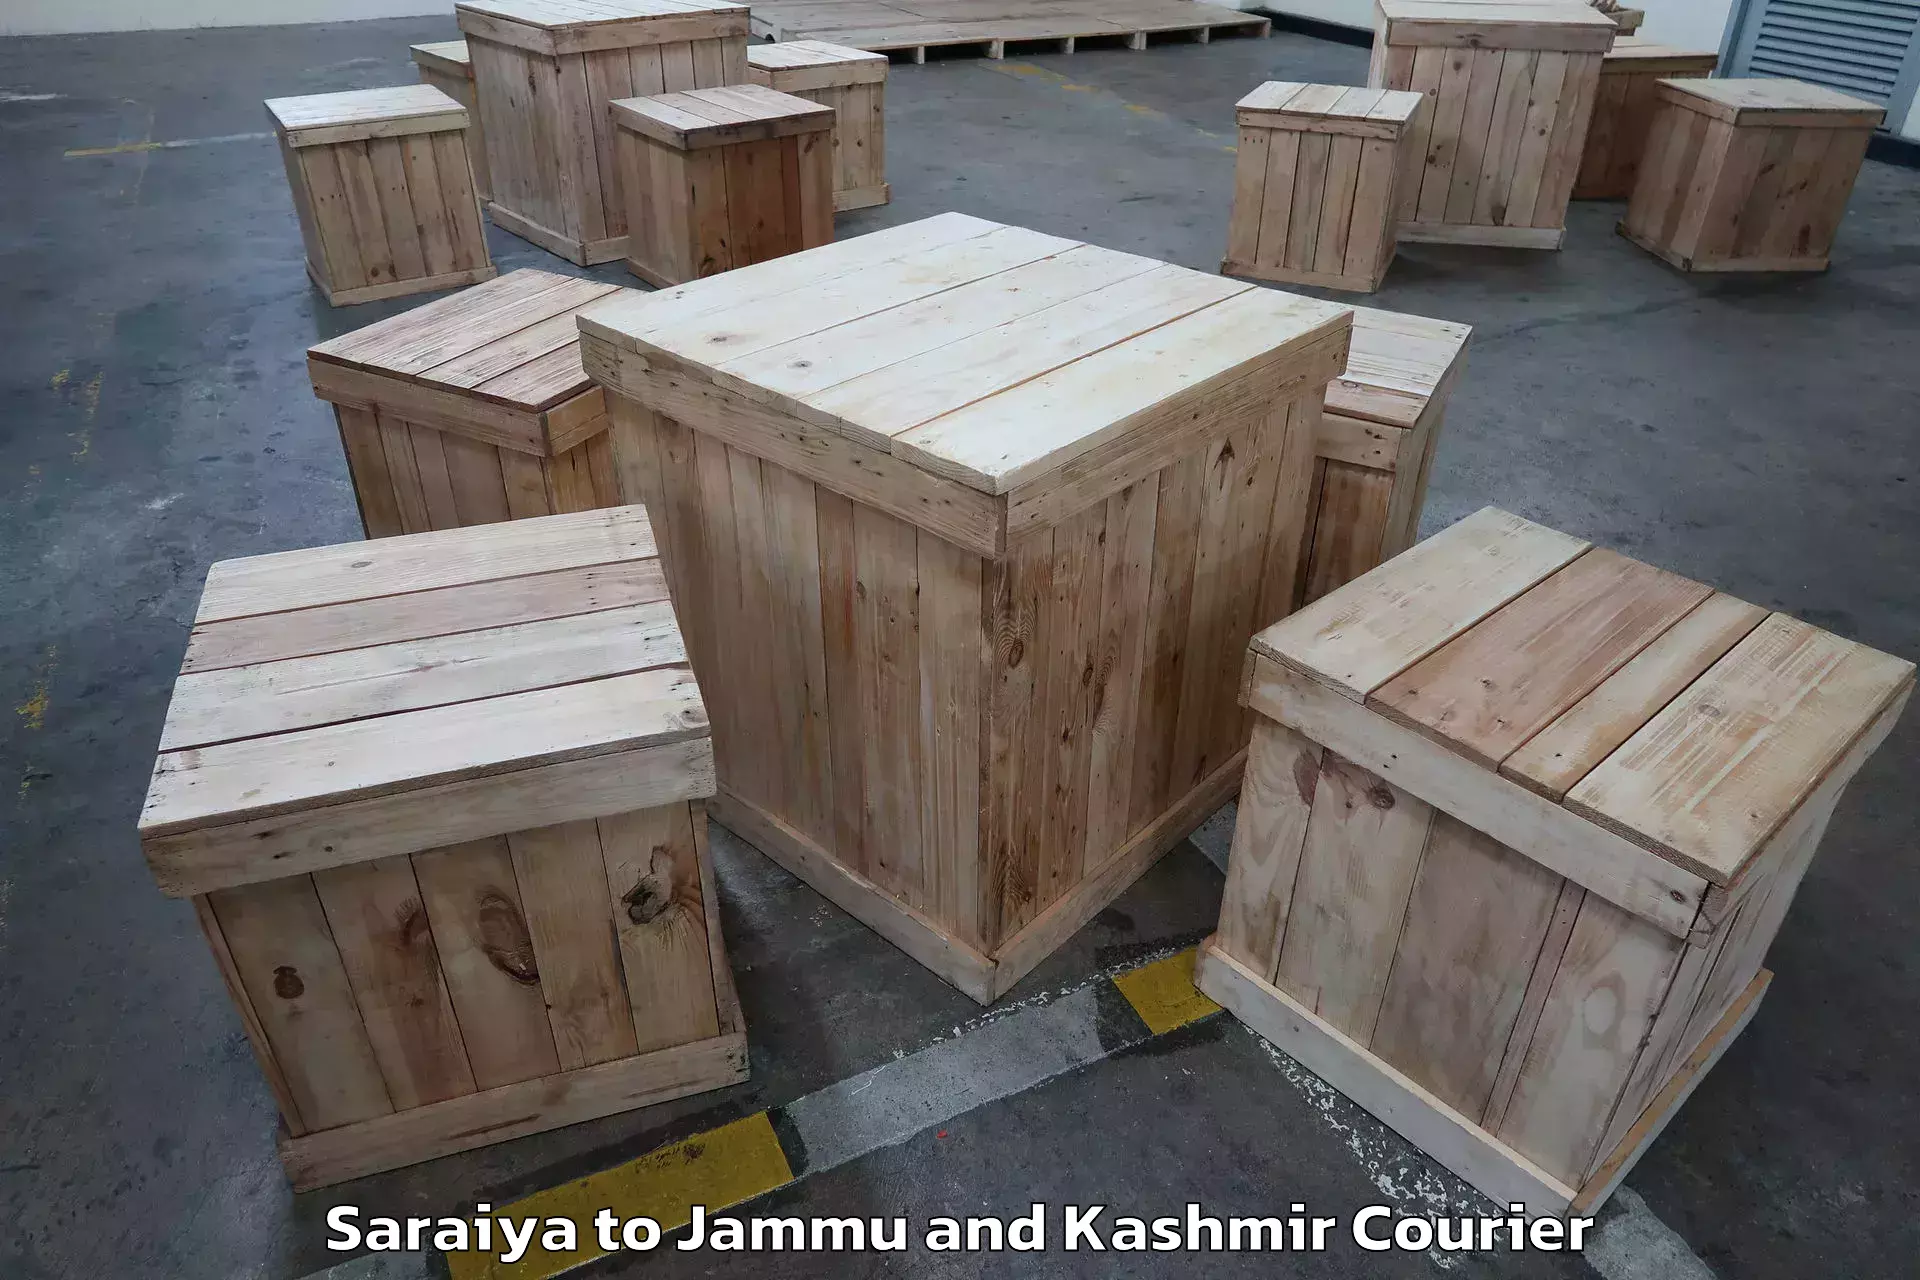 Furniture moving plans Saraiya to University of Jammu